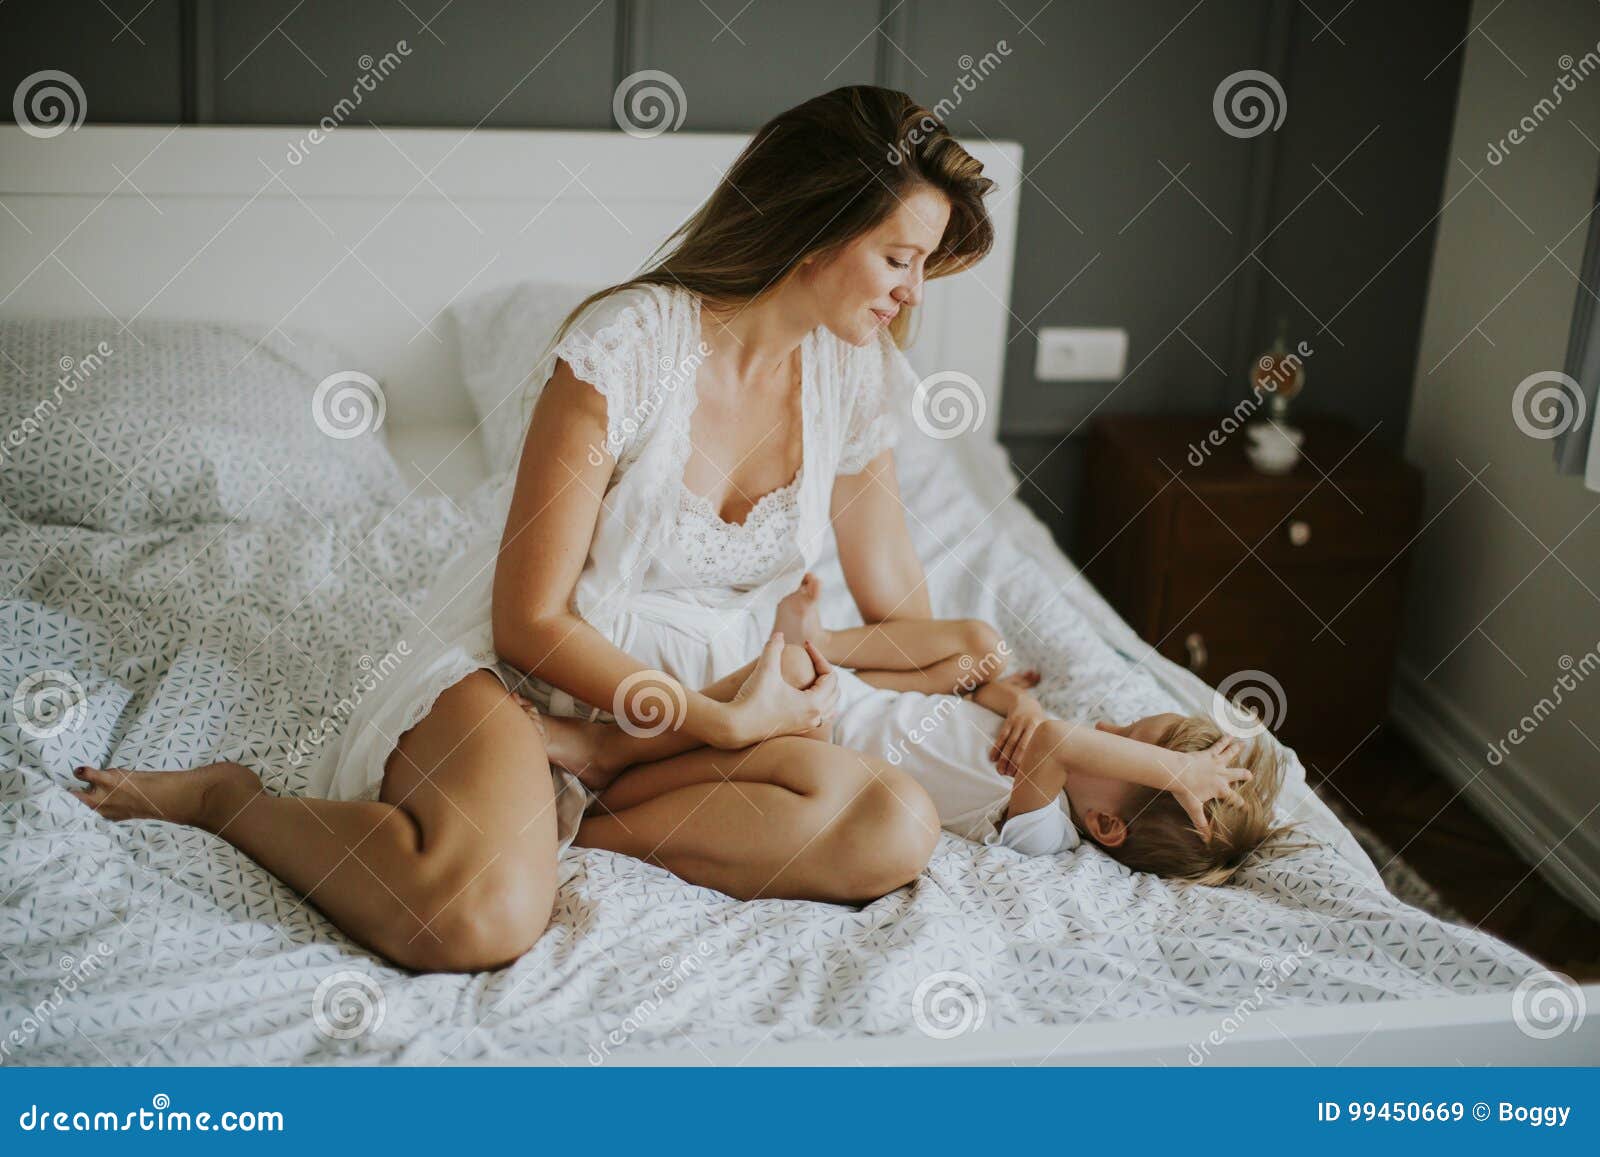 Молодая мама в постели. Молодые мамы в постели. Мать у кровати. Мамочки на кровати. Женщина и мальчик в постели.